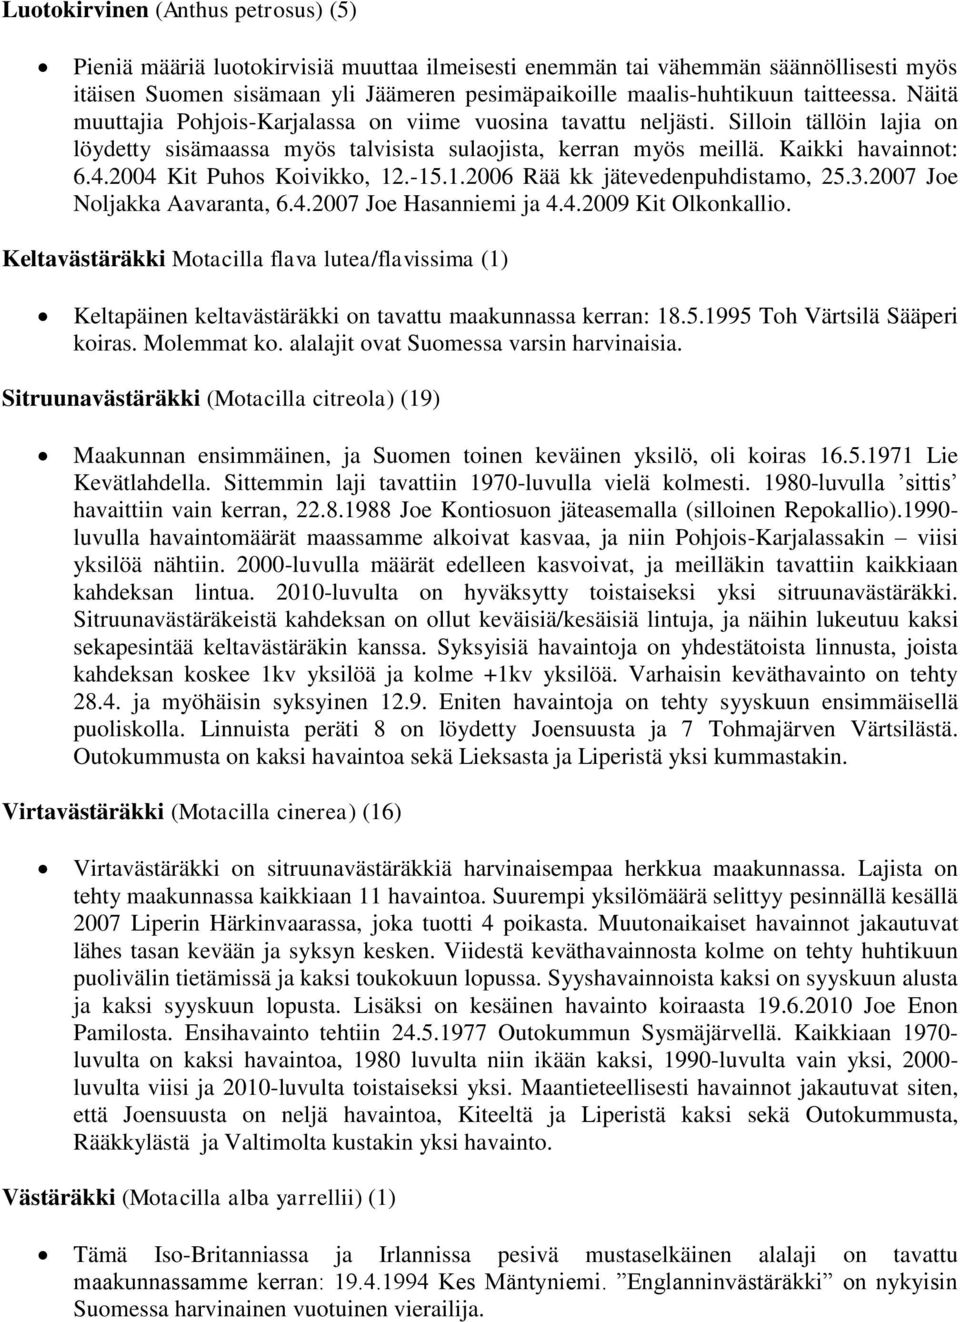 2004 Kit Puhos Koivikko, 12.-15.1.2006 Rää kk jätevedenpuhdistamo, 25.3.2007 Joe Noljakka Aavaranta, 6.4.2007 Joe Hasanniemi ja 4.4.2009 Kit Olkonkallio.